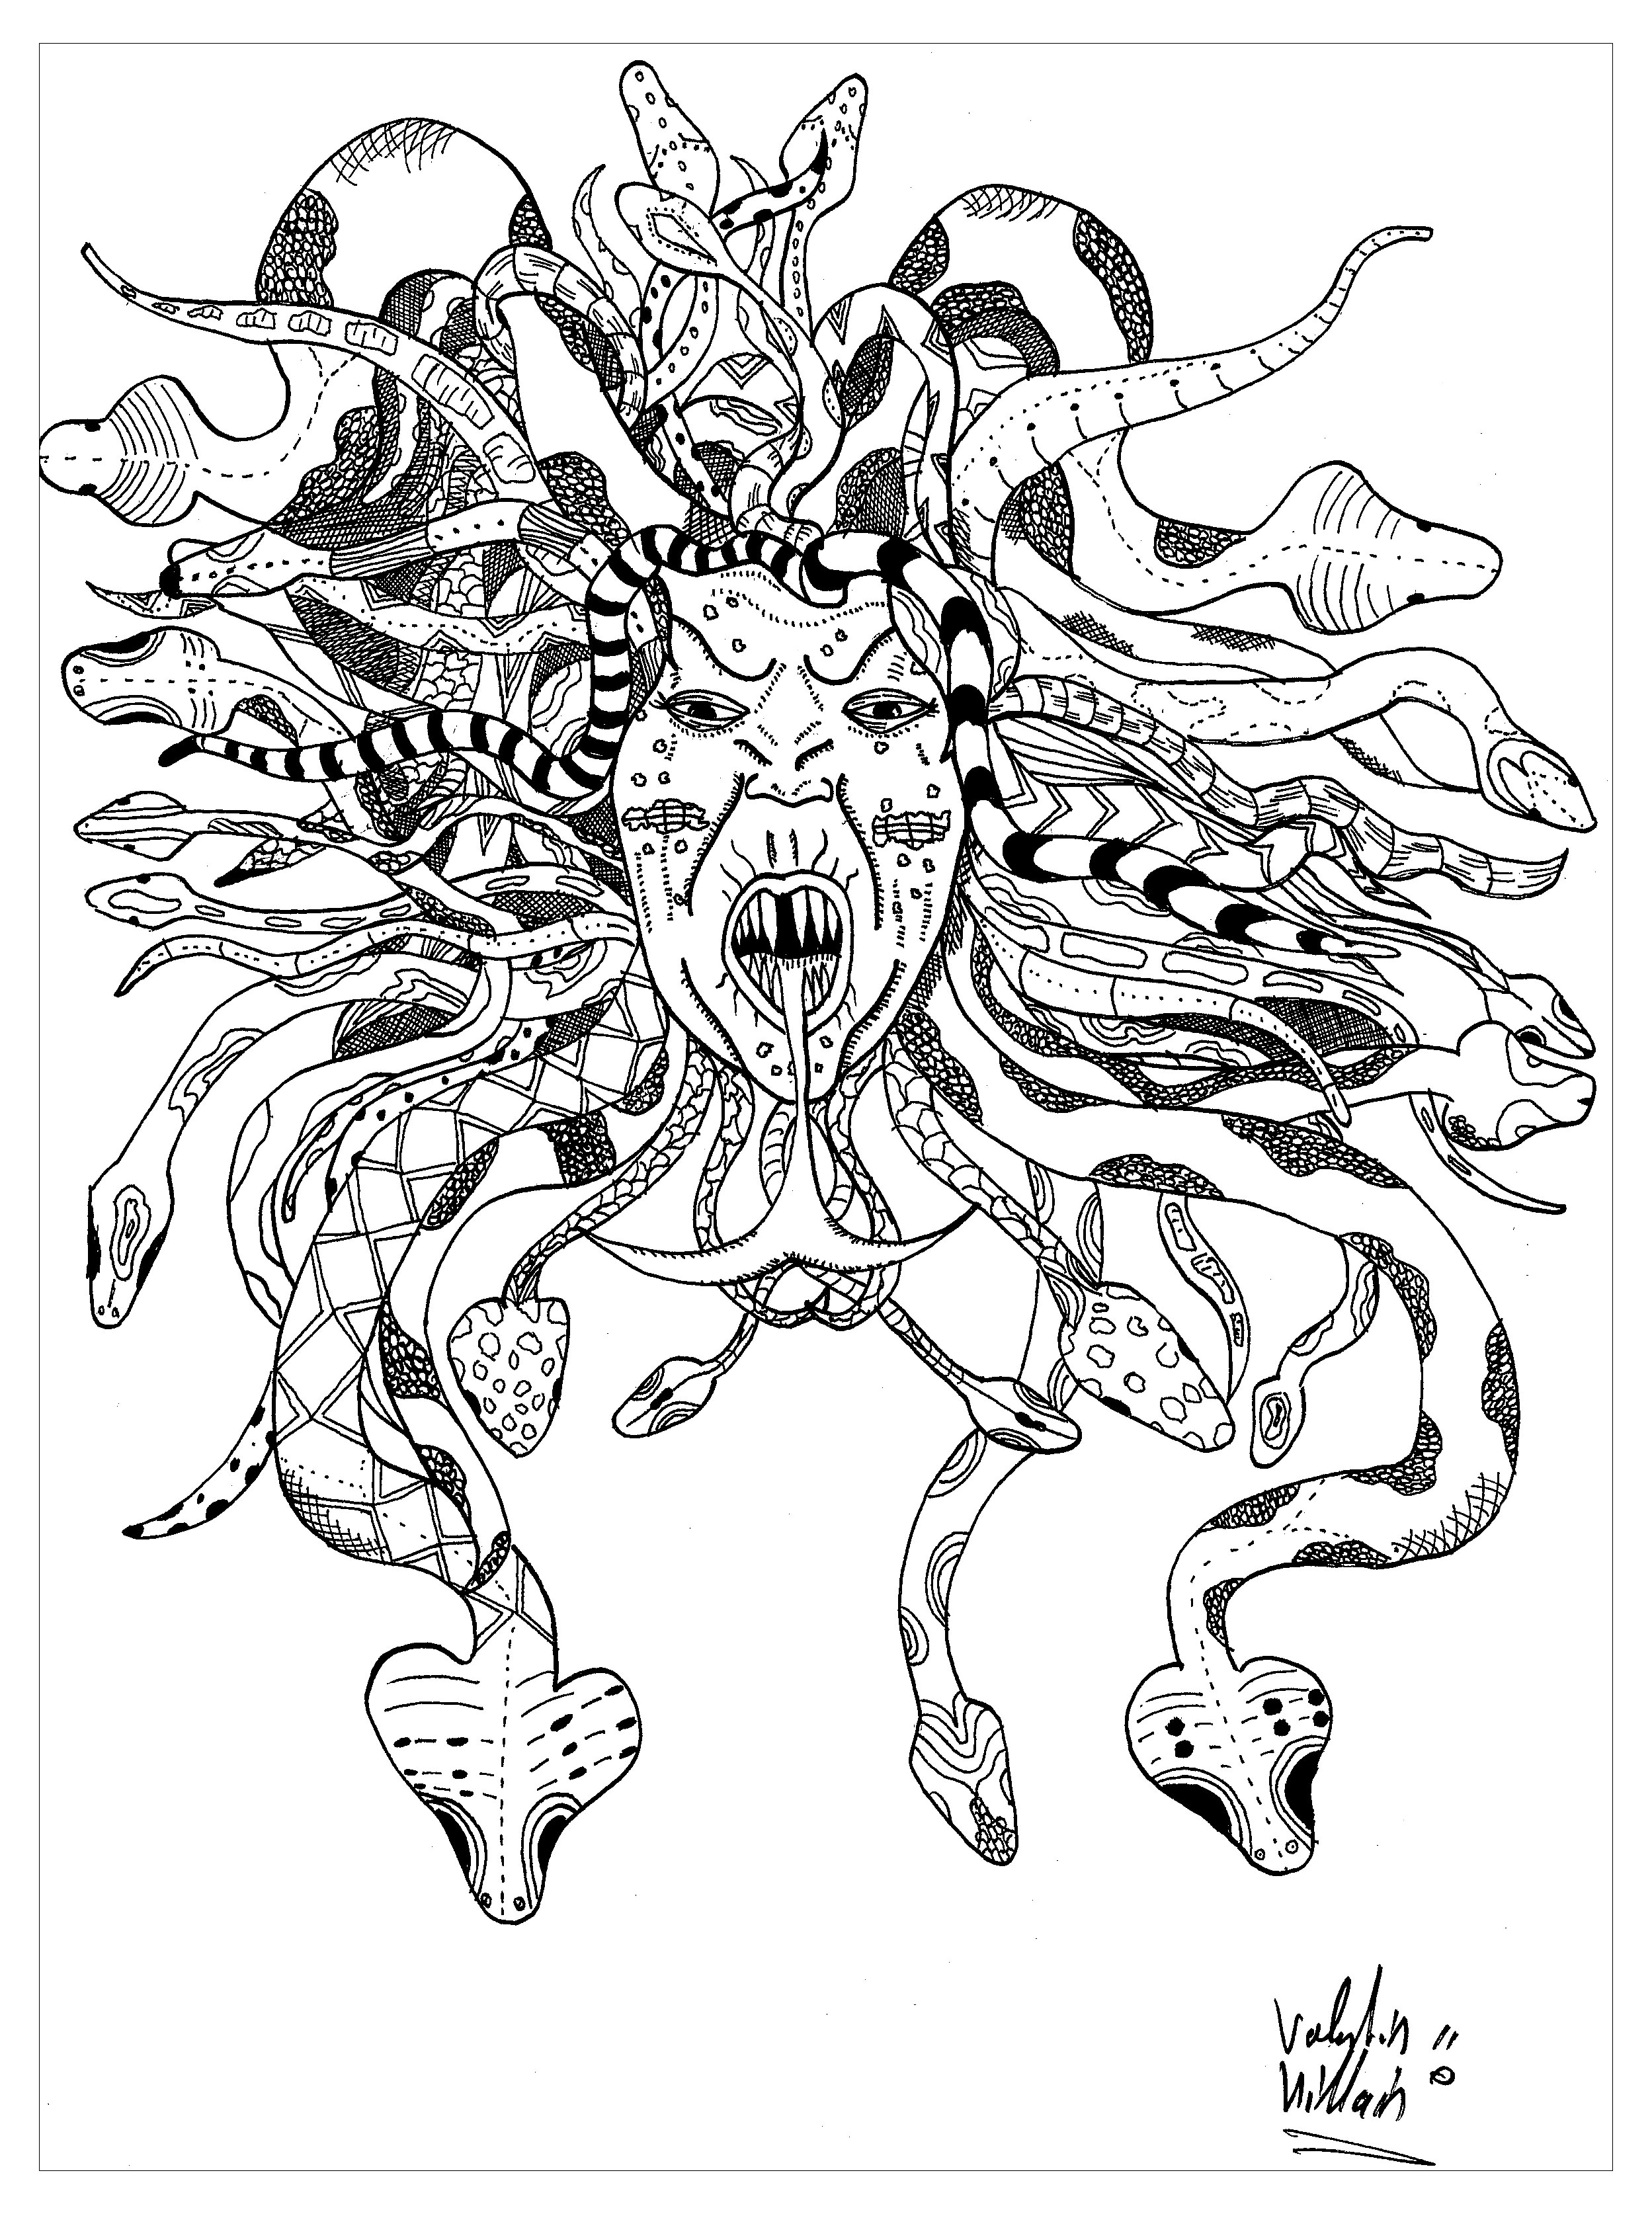 Colorare MedusaEcco una magnifica rappresentazione della mitica gorgone Medusa. Il suo volto è circondato da una criniera intrecciata di serpenti, che le conferisce un aspetto terrificante.